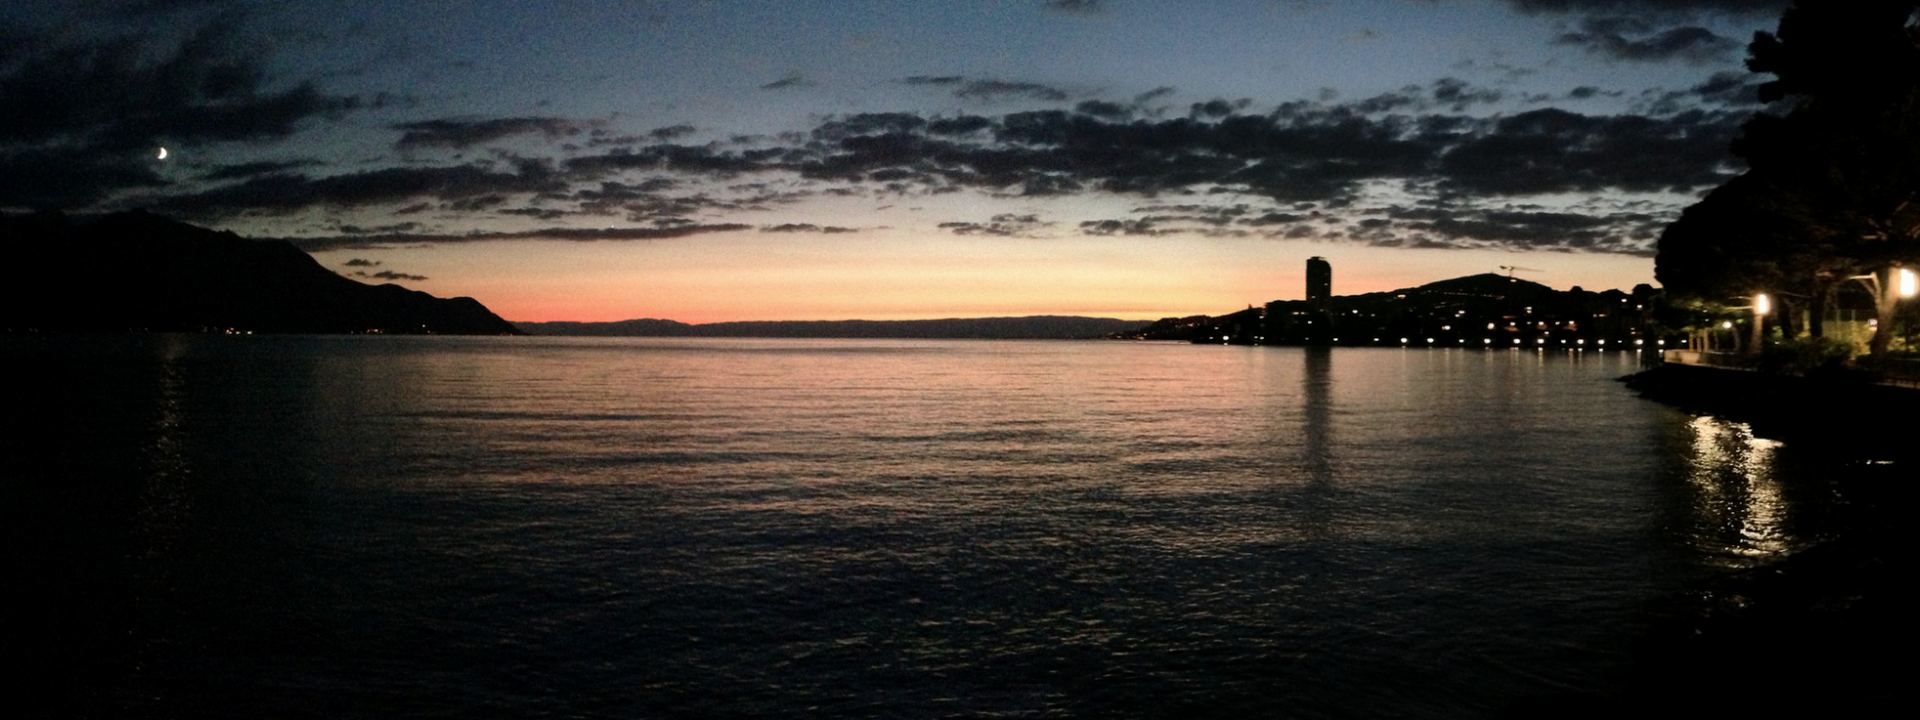 Sunset Lake Geneva, Switzerland